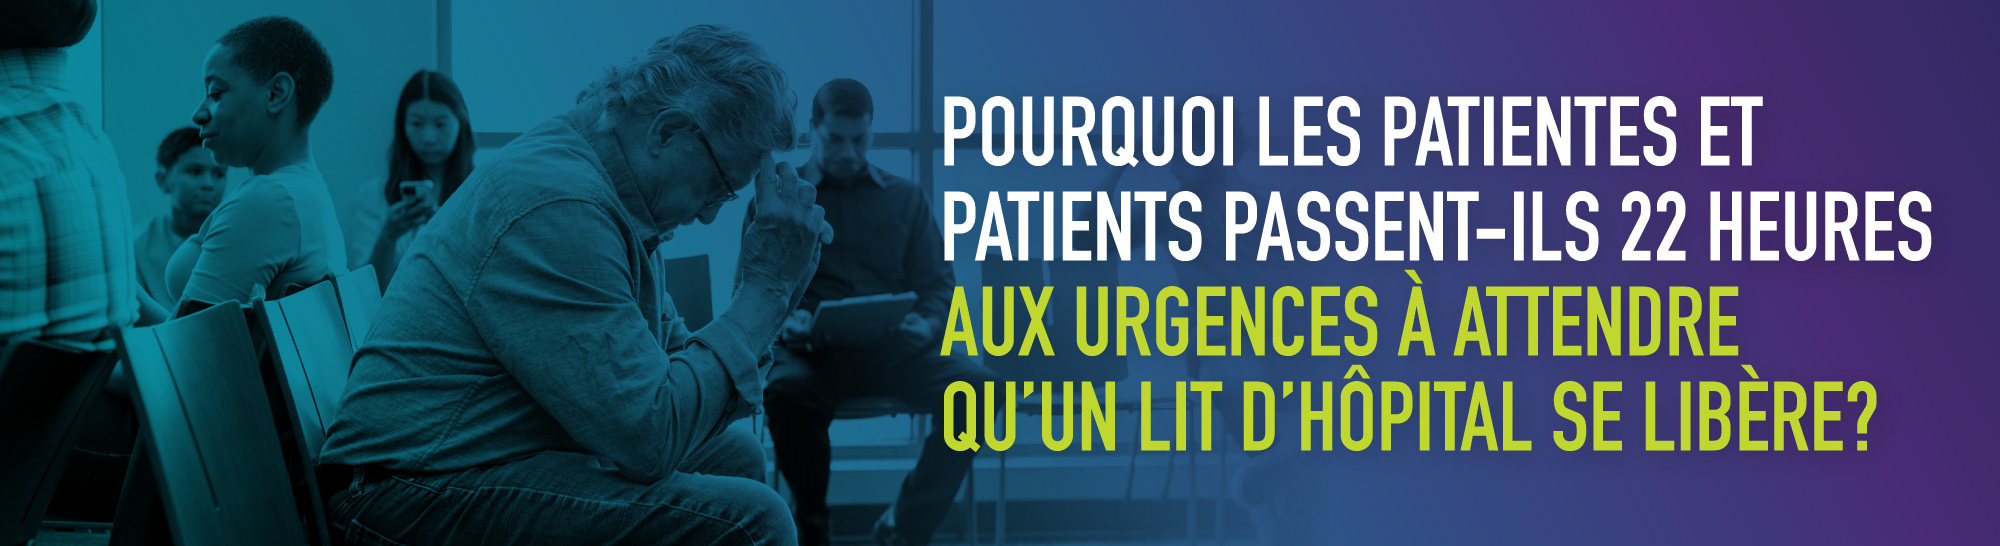 Pourquoi les patientes et patients passent-ils 22 heures aux urgences à attendre qu’un lit d’hôpital se libère?